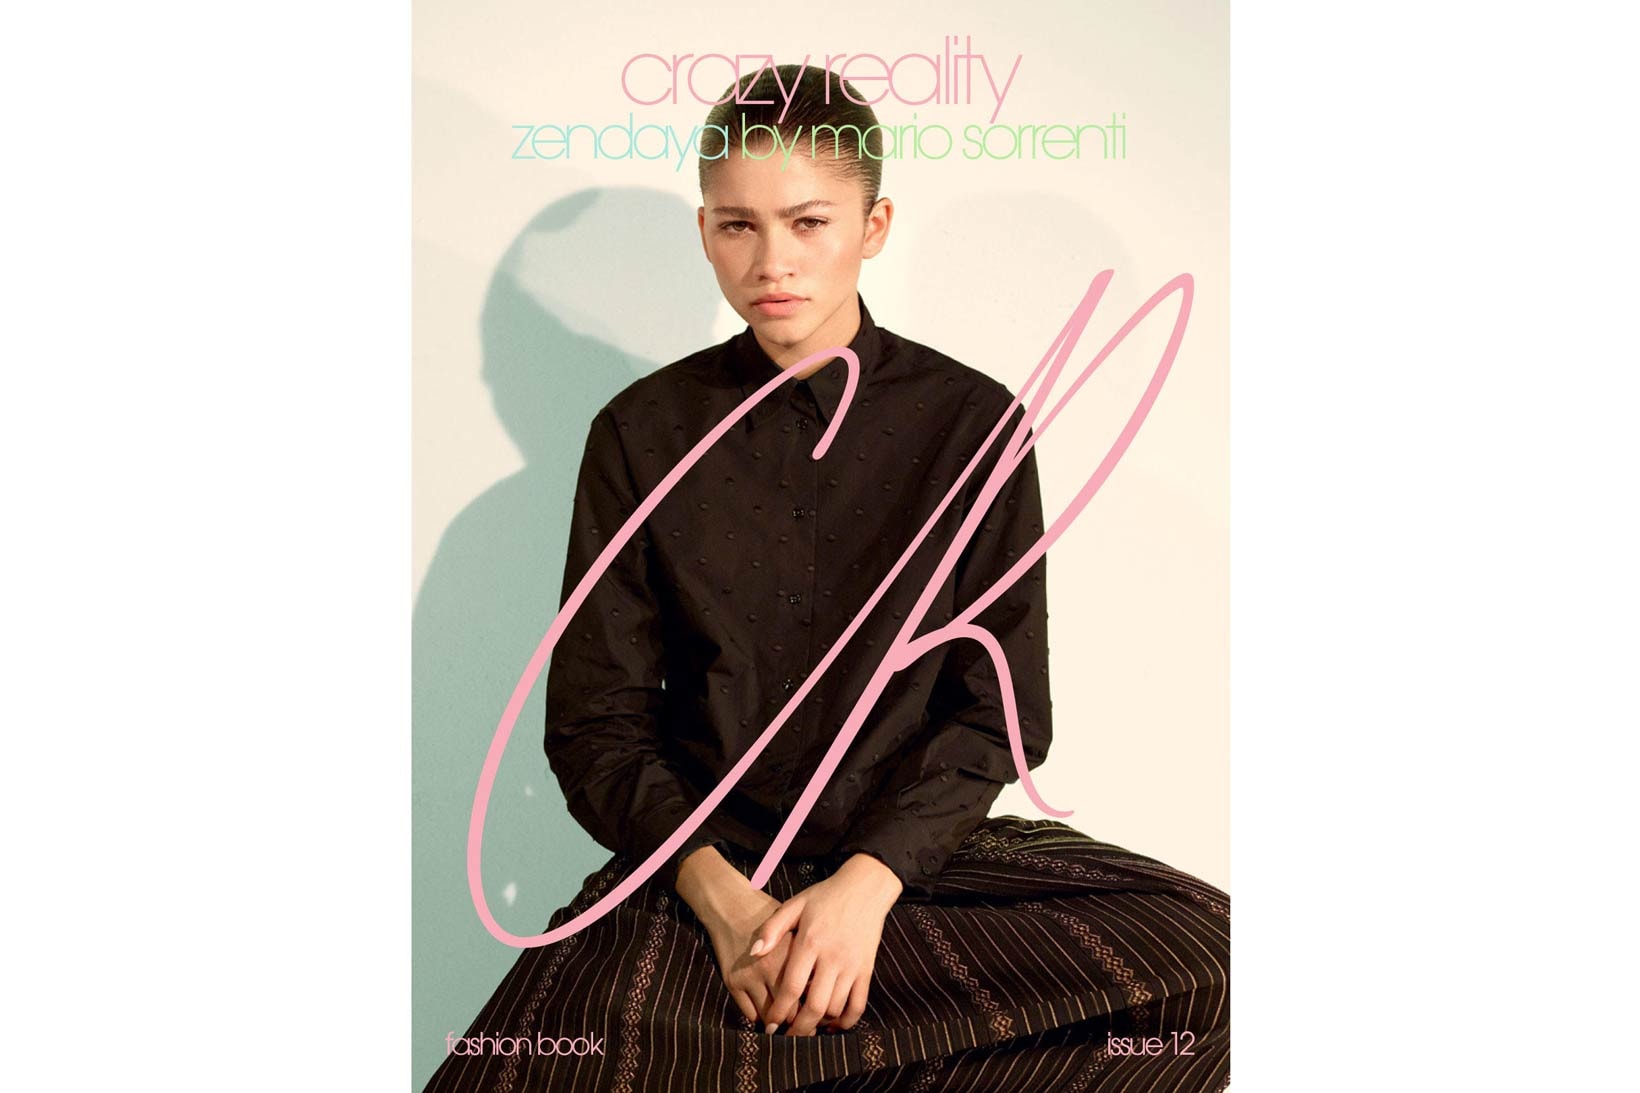 Cardi B Zendaya CR Fashion Book March 2018 Issue 12